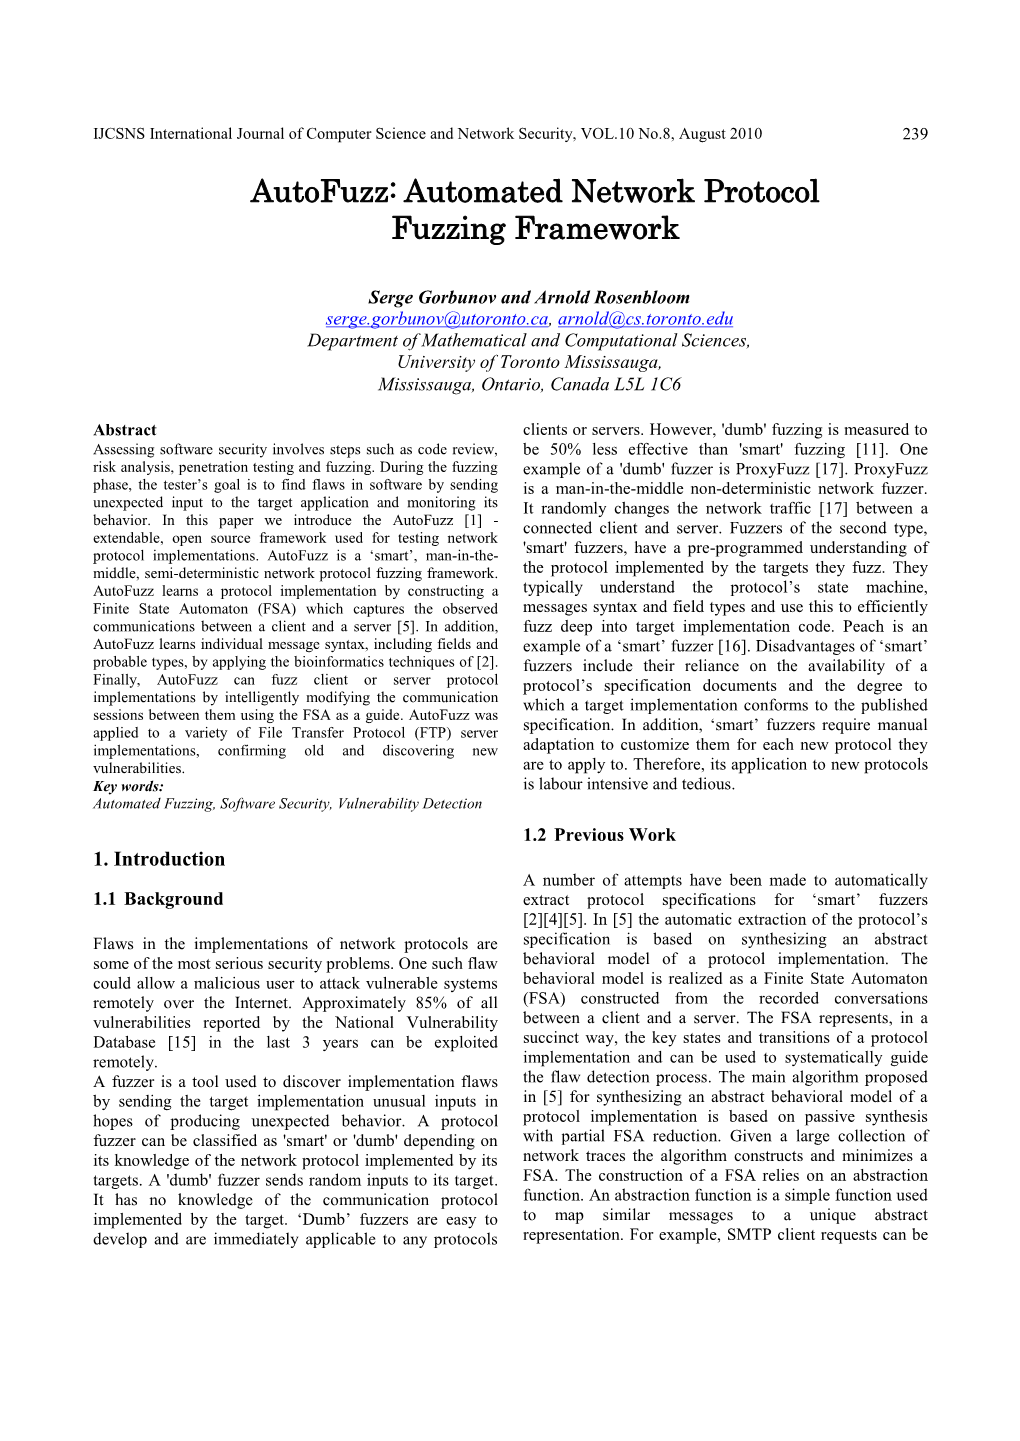 Autofuzz: Automated Network Protocol Fuzzing Framework